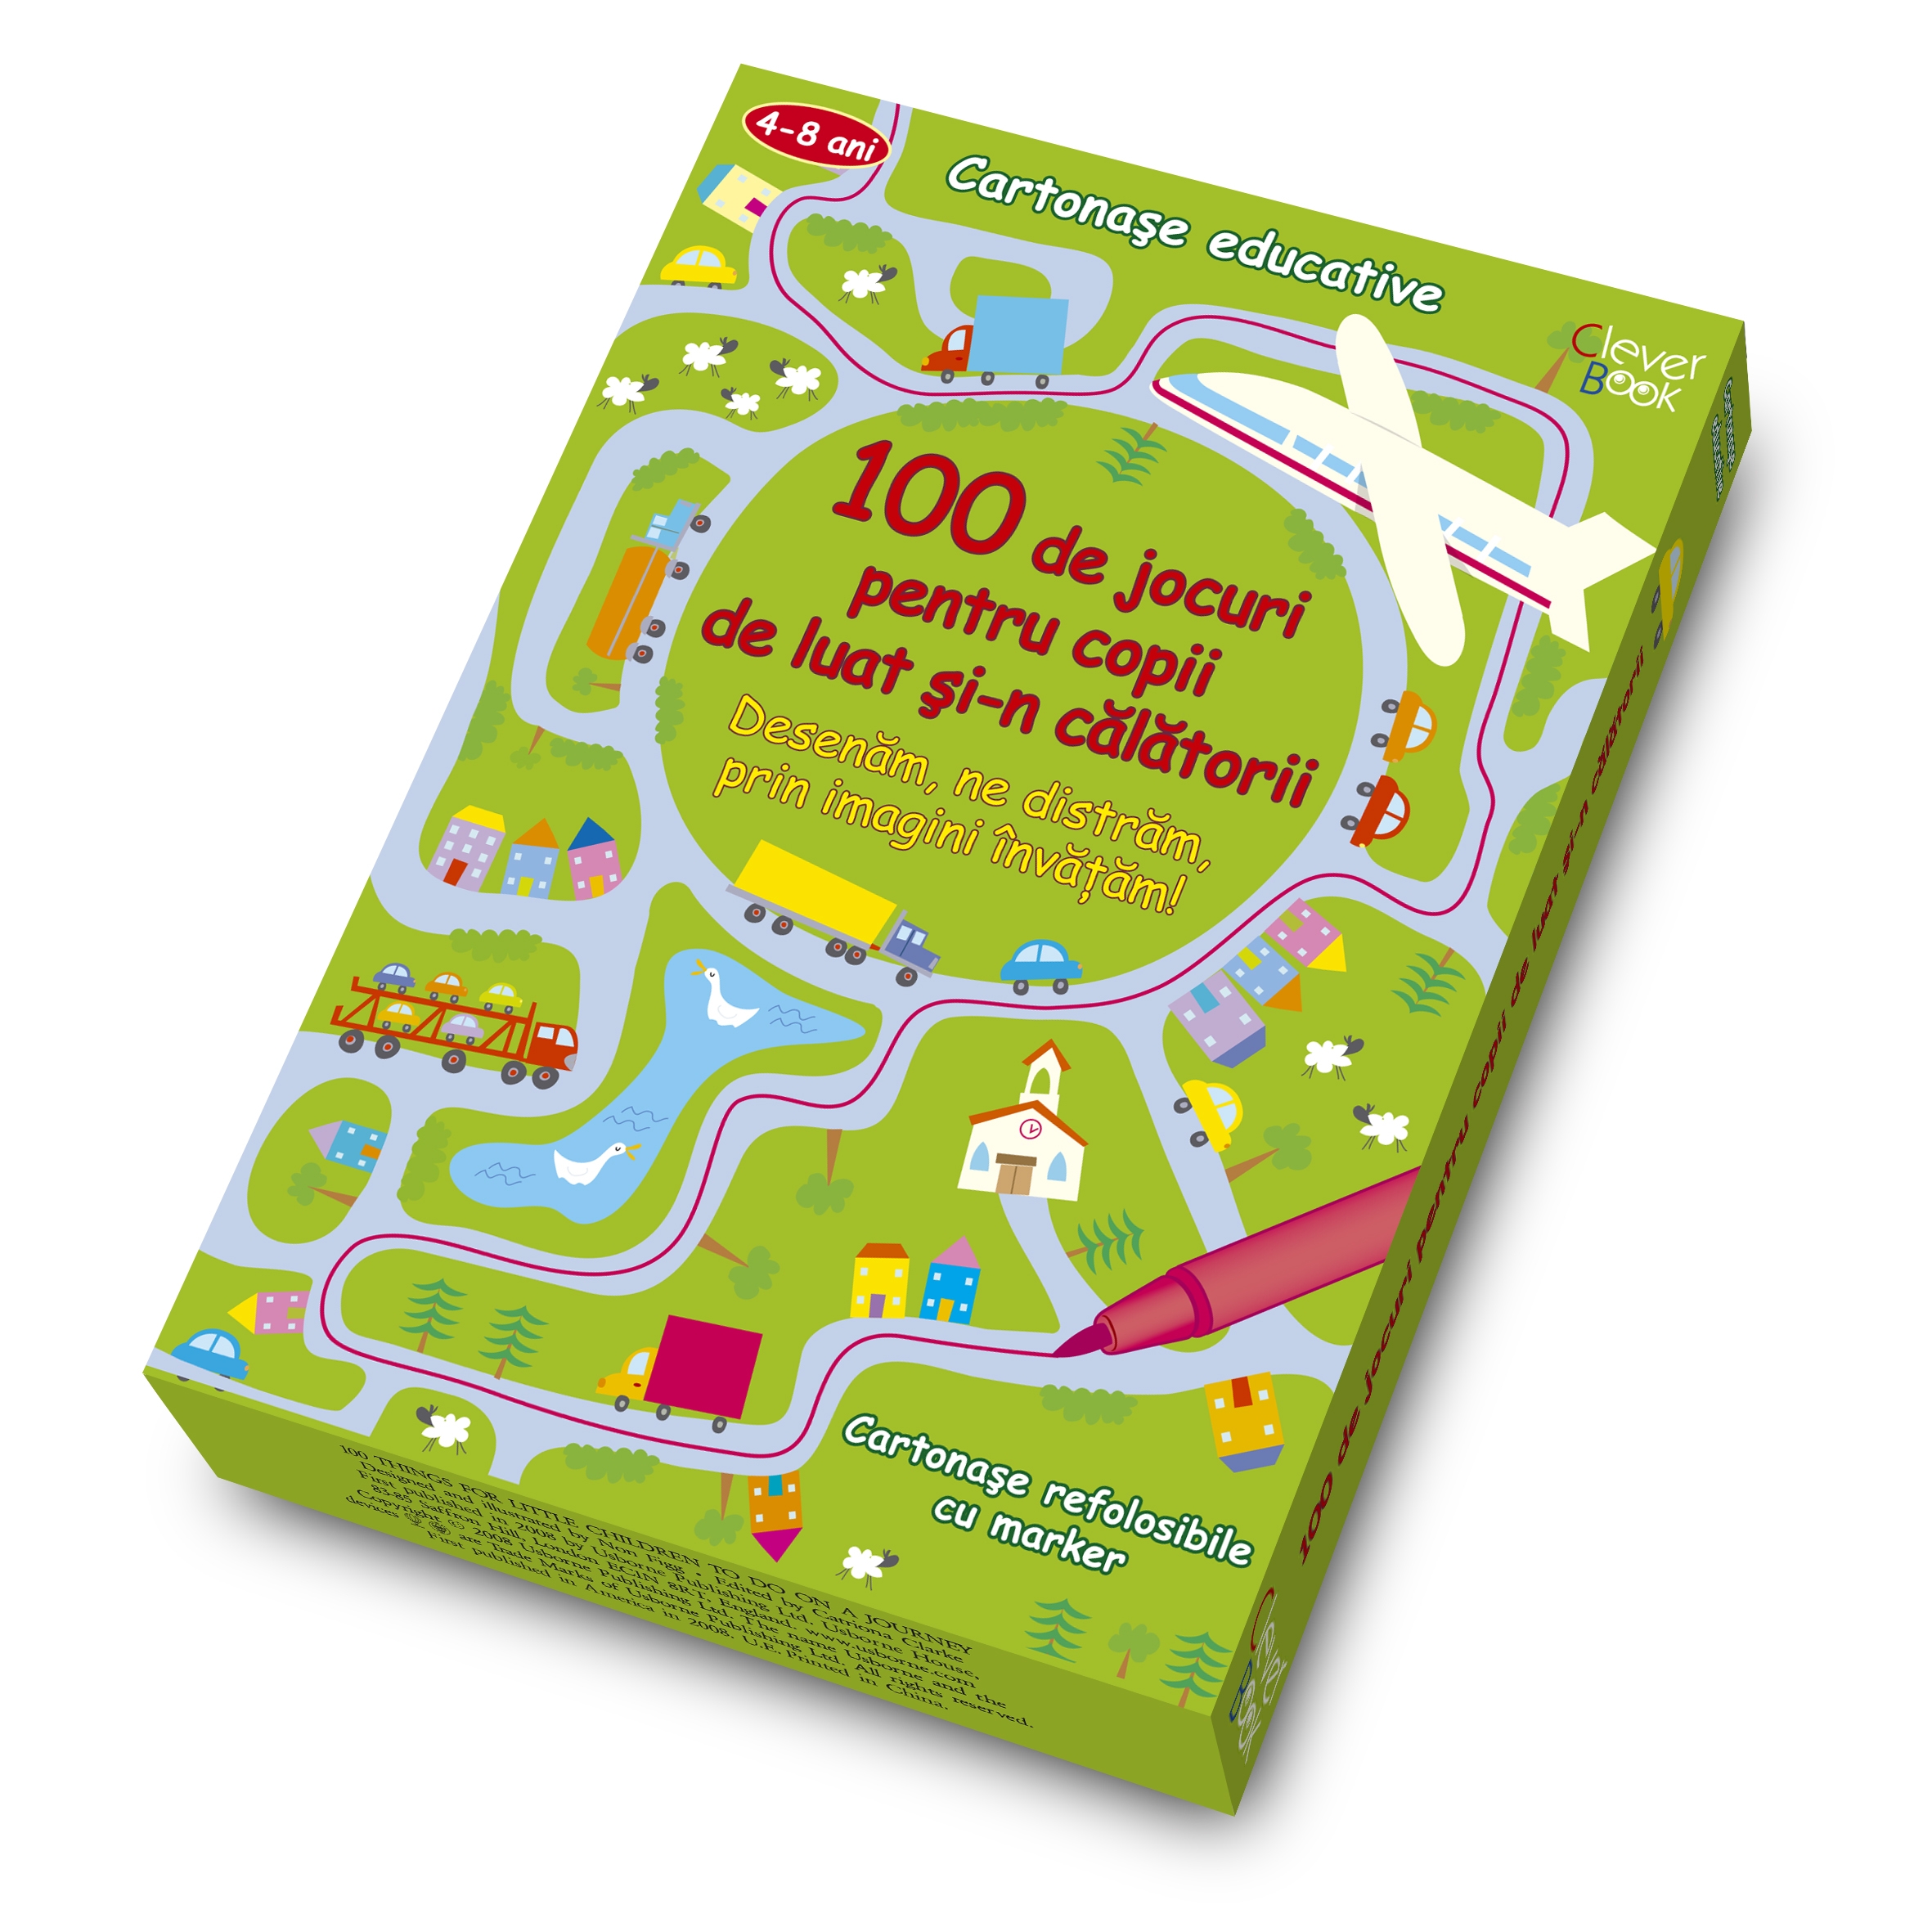 sfatulparintilor.ro – clever book – 100 de jocuri pentru copii de luat si-n calatorii